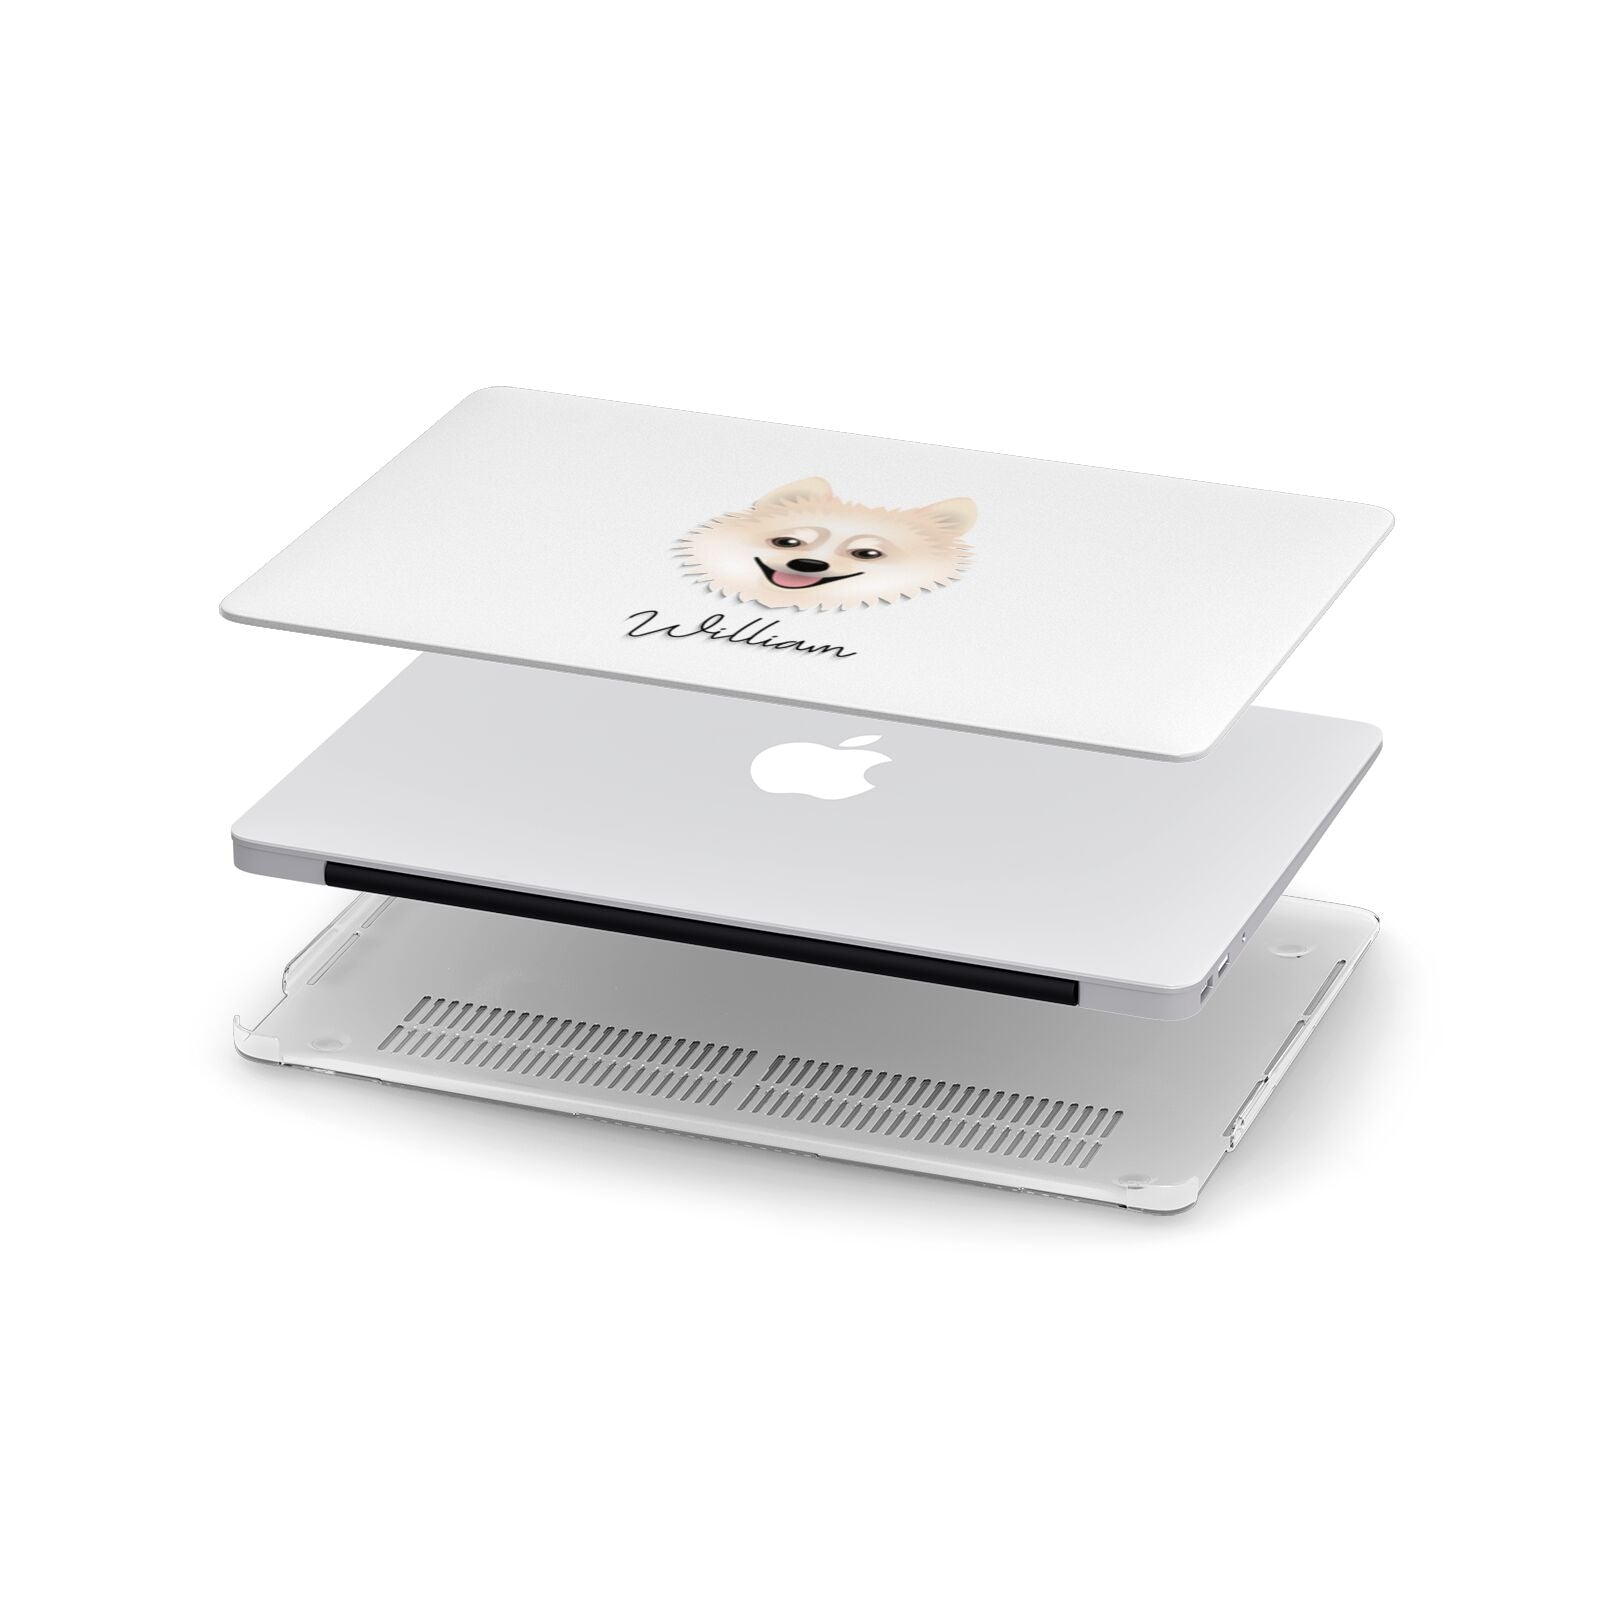 Pomsky Personalised Apple MacBook Case in Detail